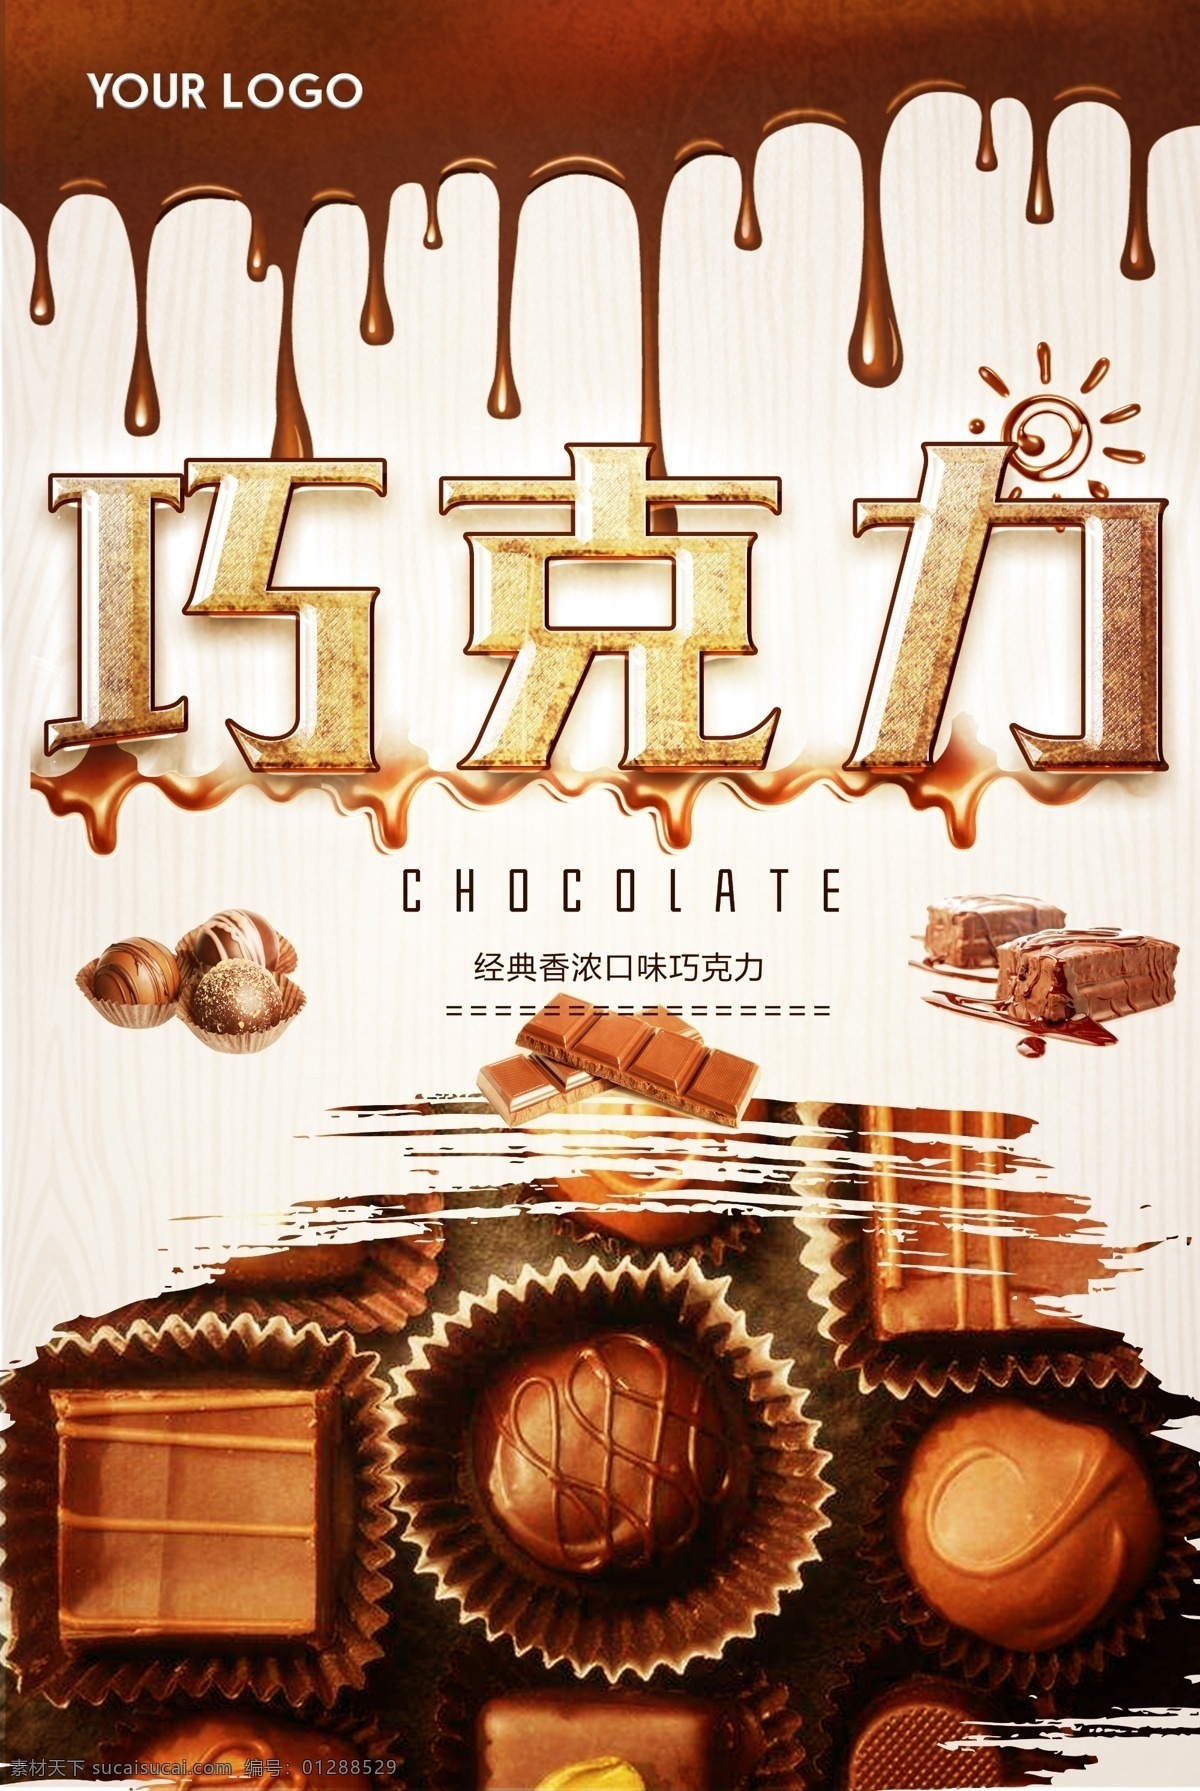 美味 巧克力 美食 海报 巧克力海报 巧克力展板 巧克力广告 巧克力蛋糕 巧克力店 巧克力制作 巧克力易拉宝 巧克力包装 牛奶巧克力 巧克力促销 德芙巧克力 甜品店 甜品店海报 巧克力饼干 心形巧克力 情人节巧克力 巧克力灯箱 巧克力甜点 巧克力点心 巧克力糖 巧克力面包 糕点 零食